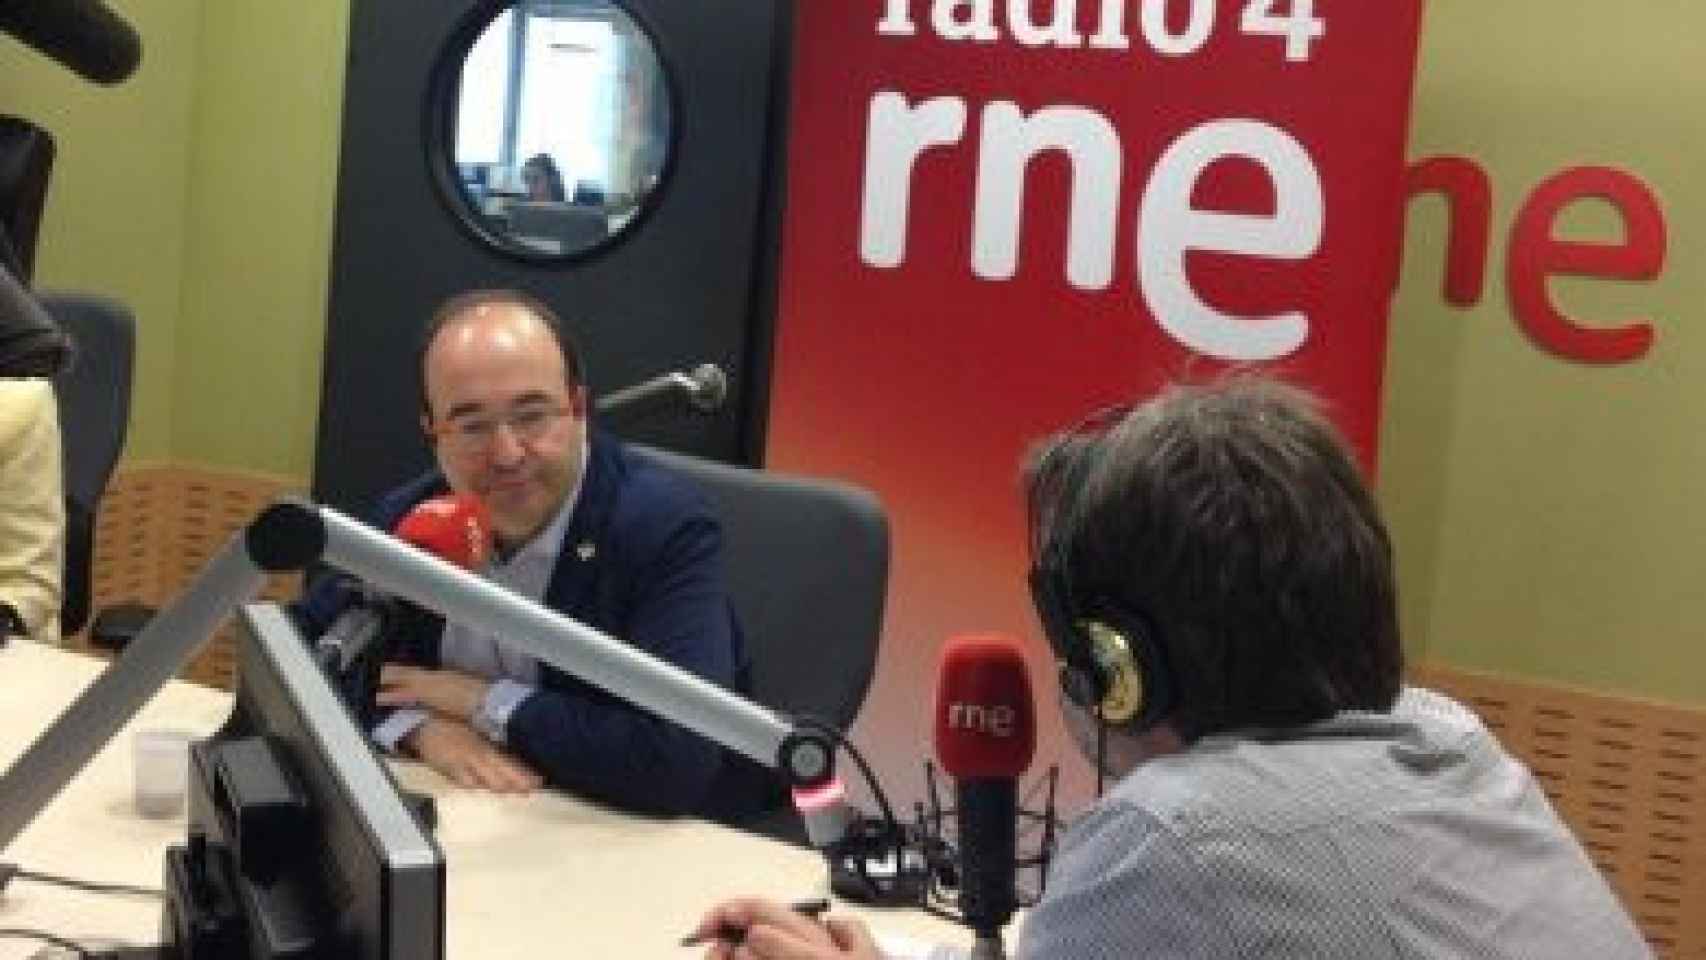 El primer secretario del PSC, Miquel Iceta, en los estudios de Ràdio 4